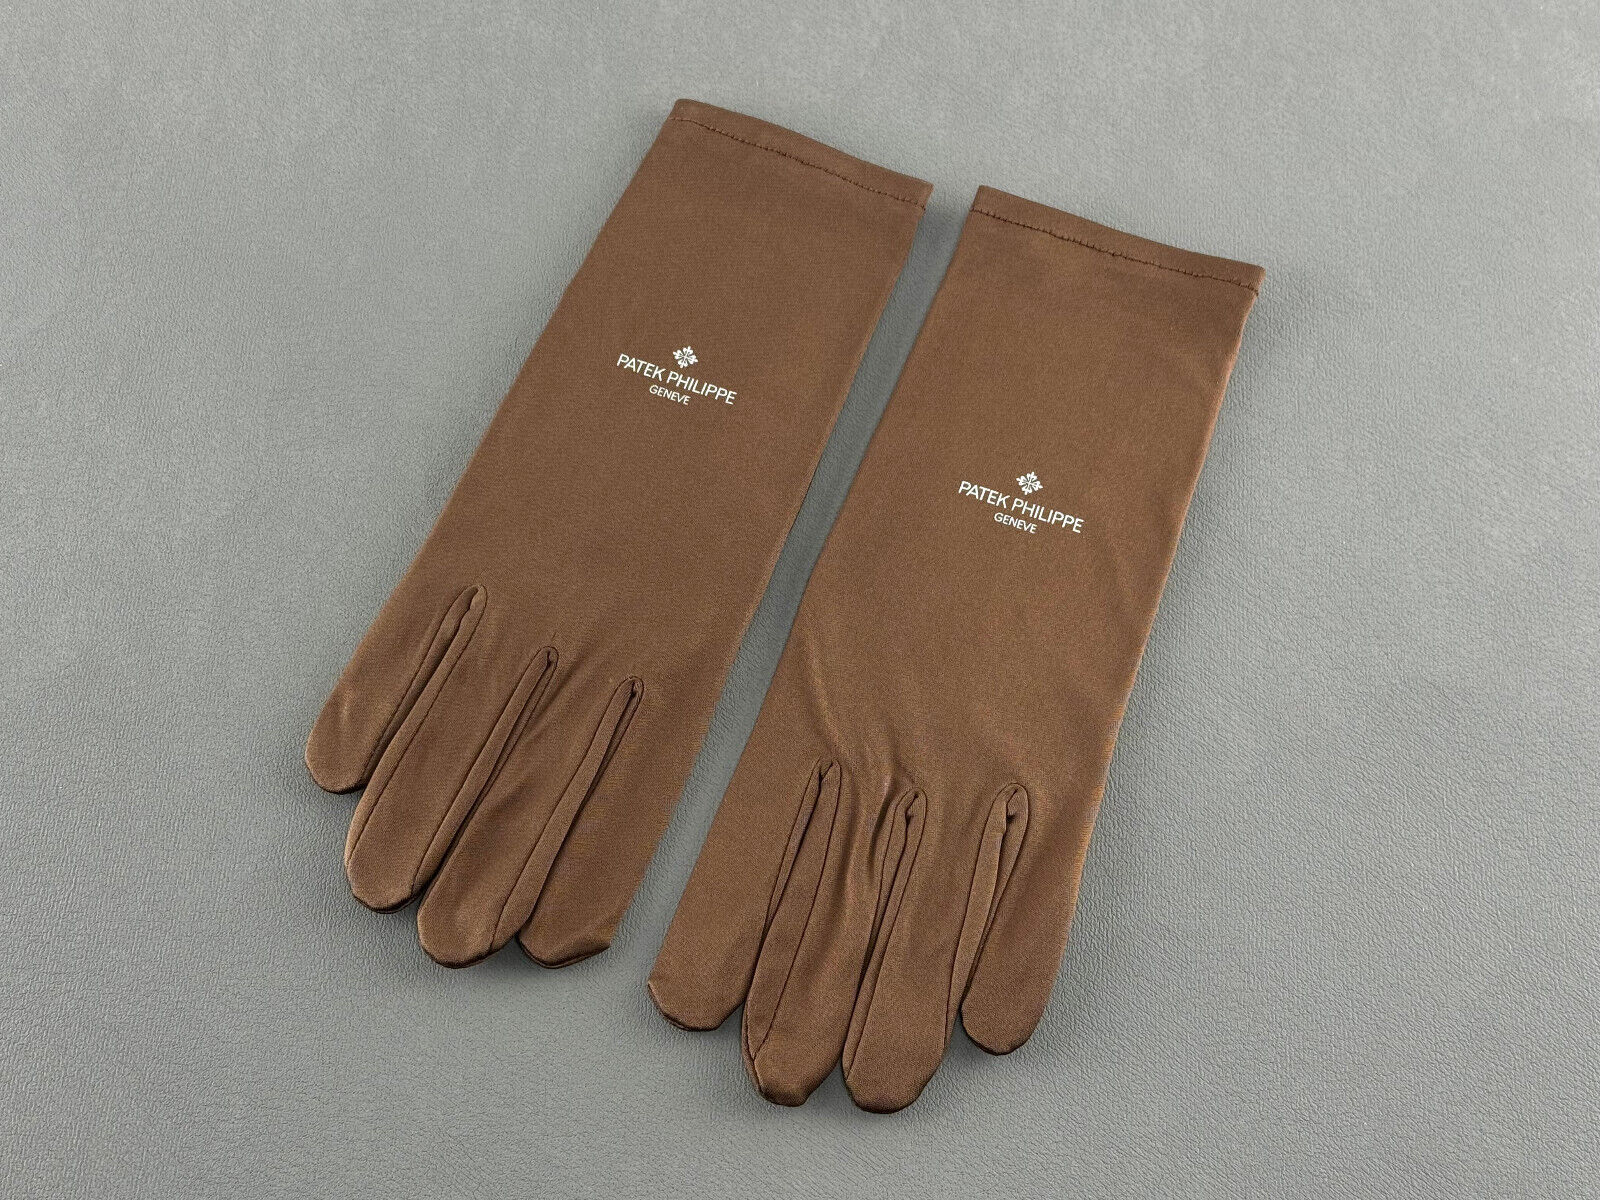 Patek Philippe Juwelier Handschuhe Polyester gloves Braun brown